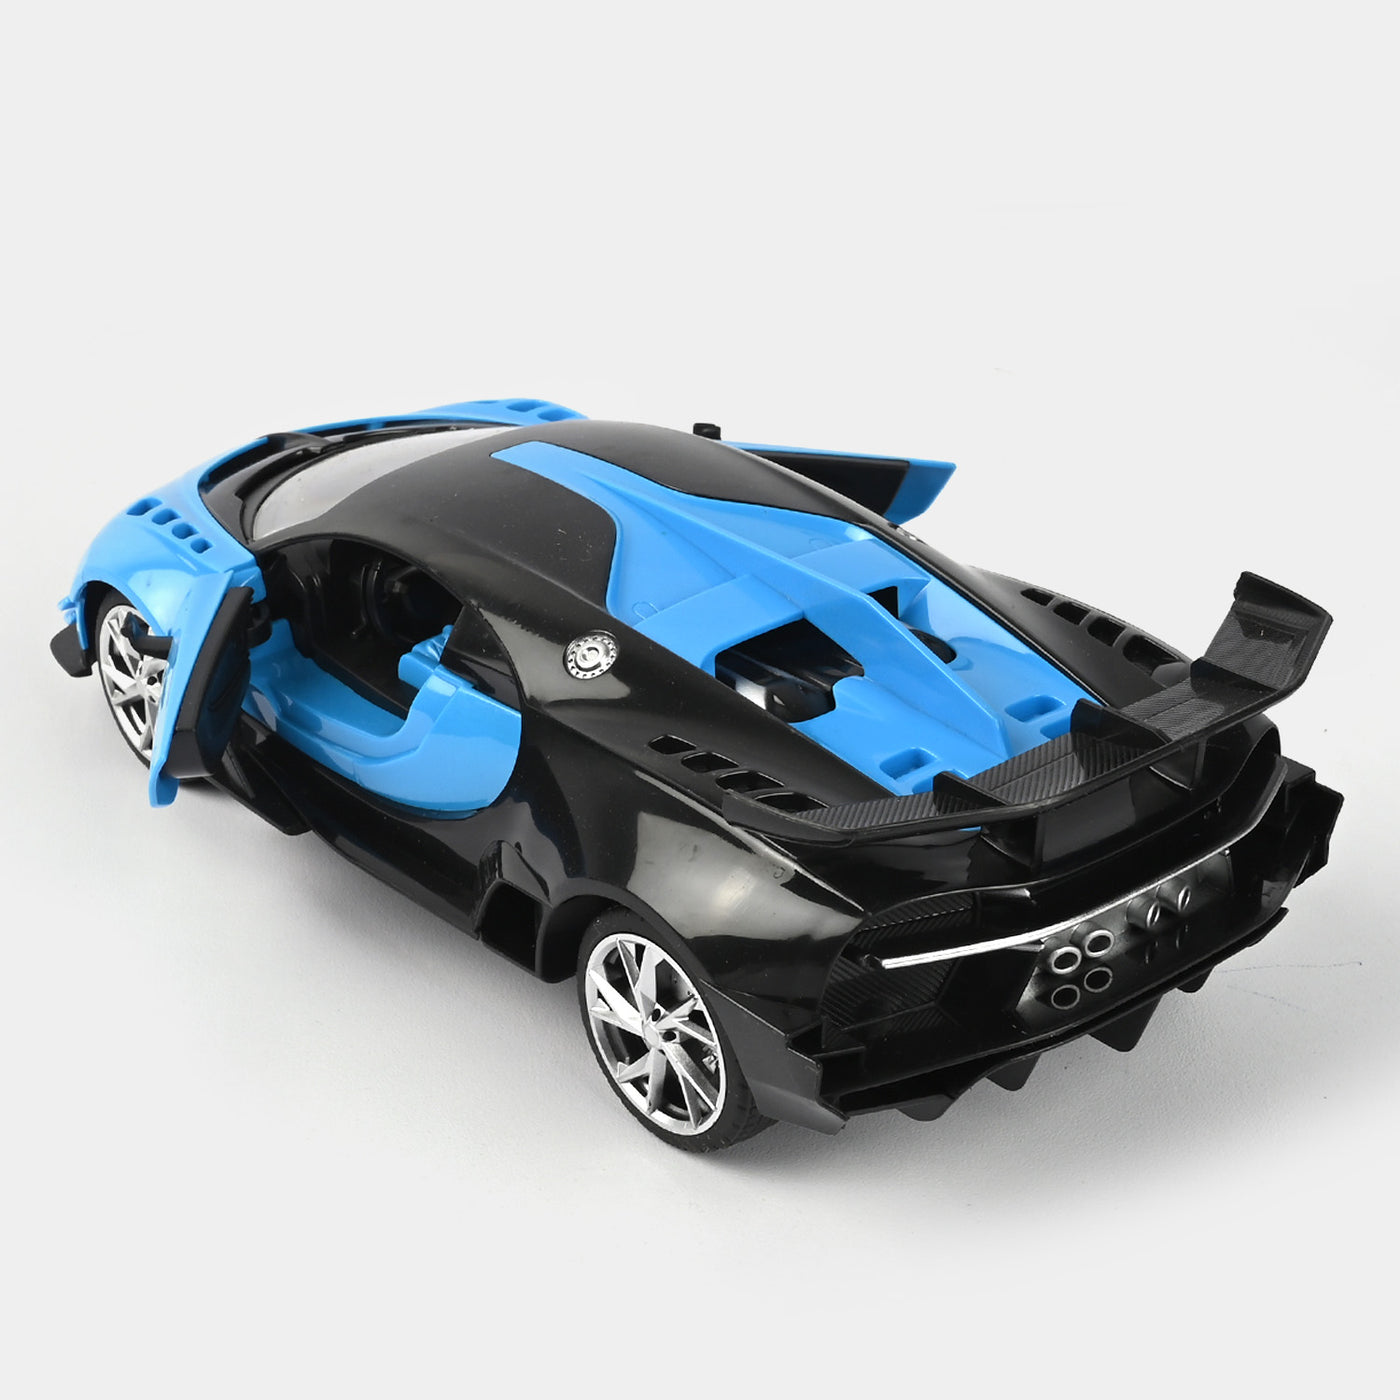 Stylish Bugatti Car Remote Control Toy For Kids